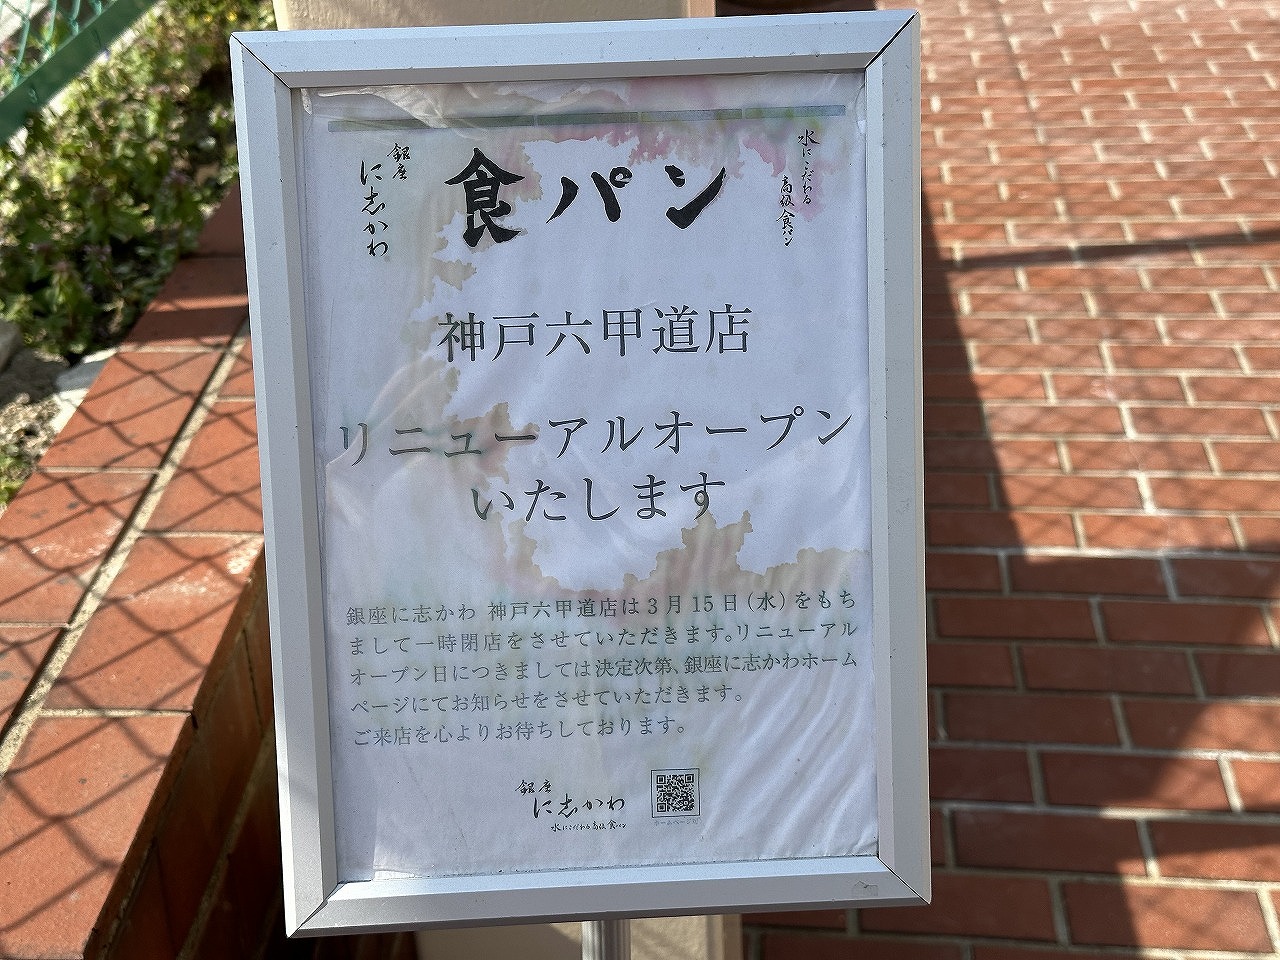 食パン専門店「銀座に志 神戸六甲店」